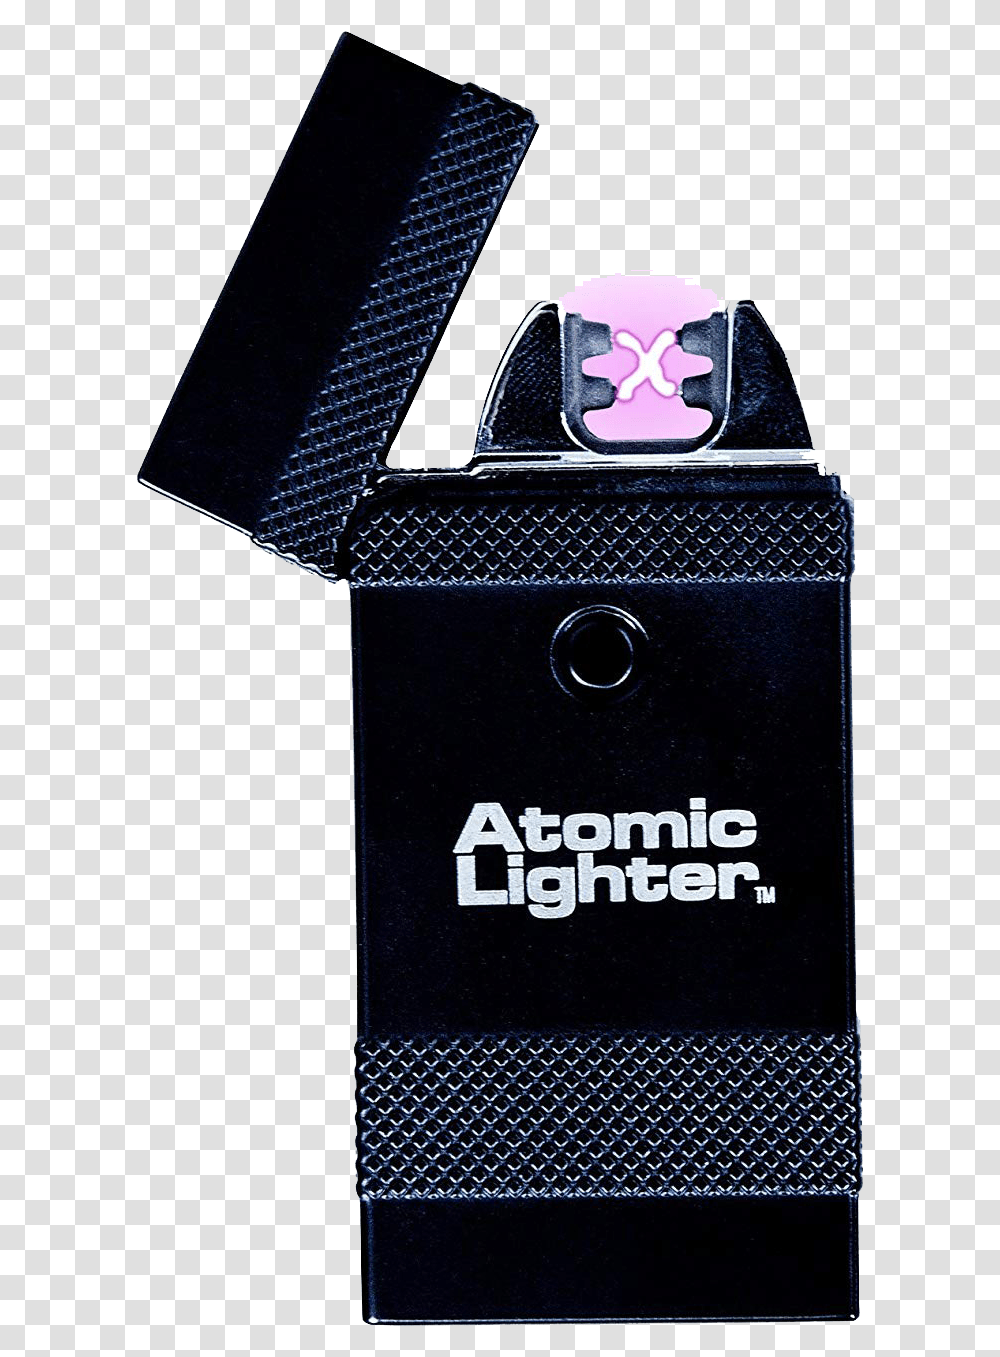 Bic Lighter Atomic Lighter Transparent Png